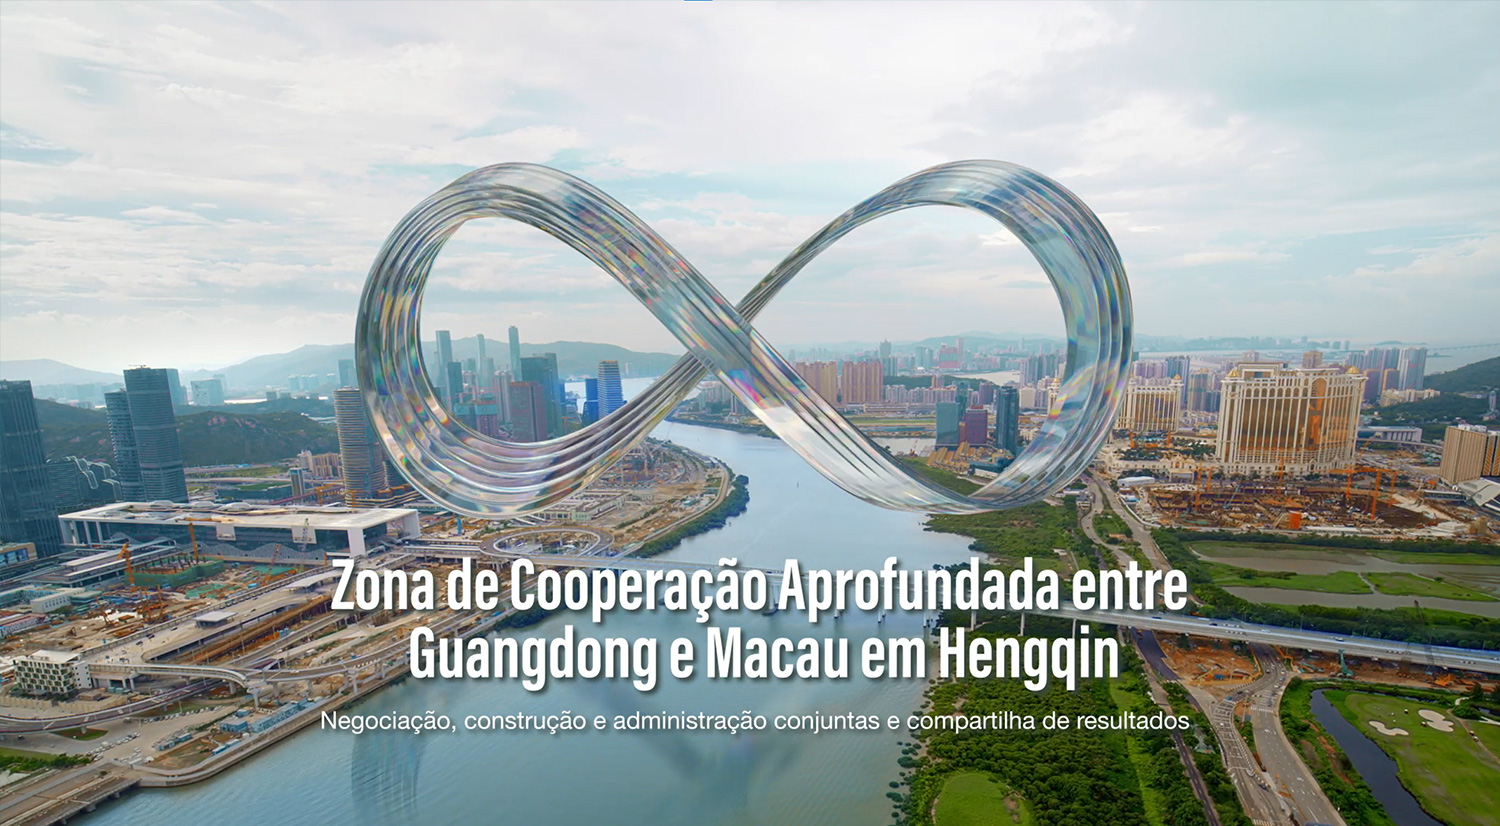 “Zona de Cooperação Aprofundada entre Guangdong e Macau em Hengqin”– Panorama 1 minuto